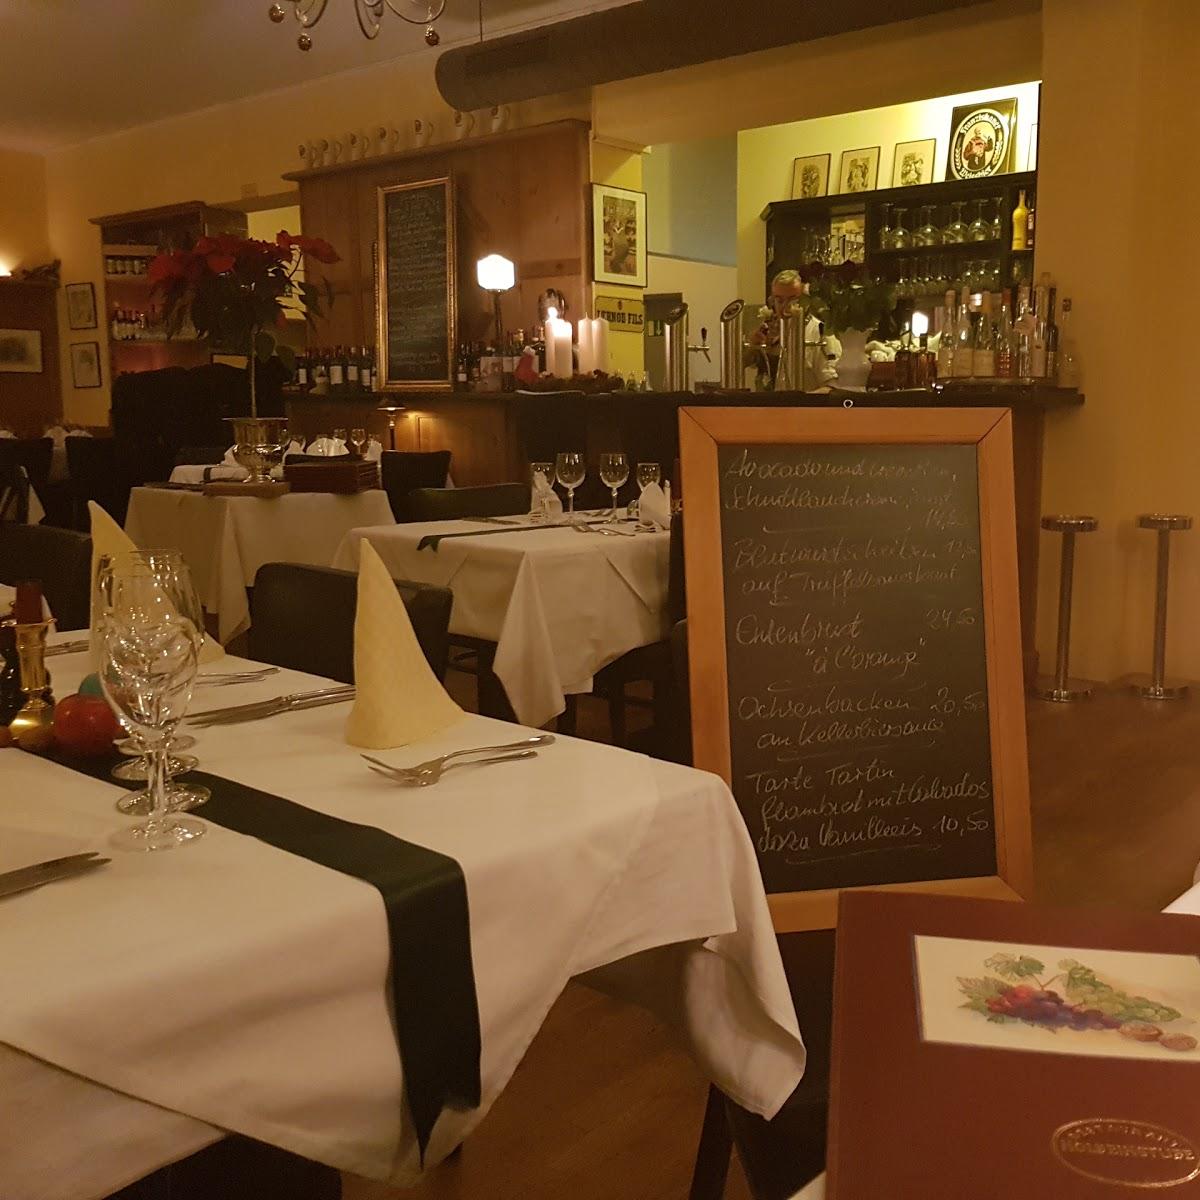 Restaurant "Restaurant Saint Laurent" in München